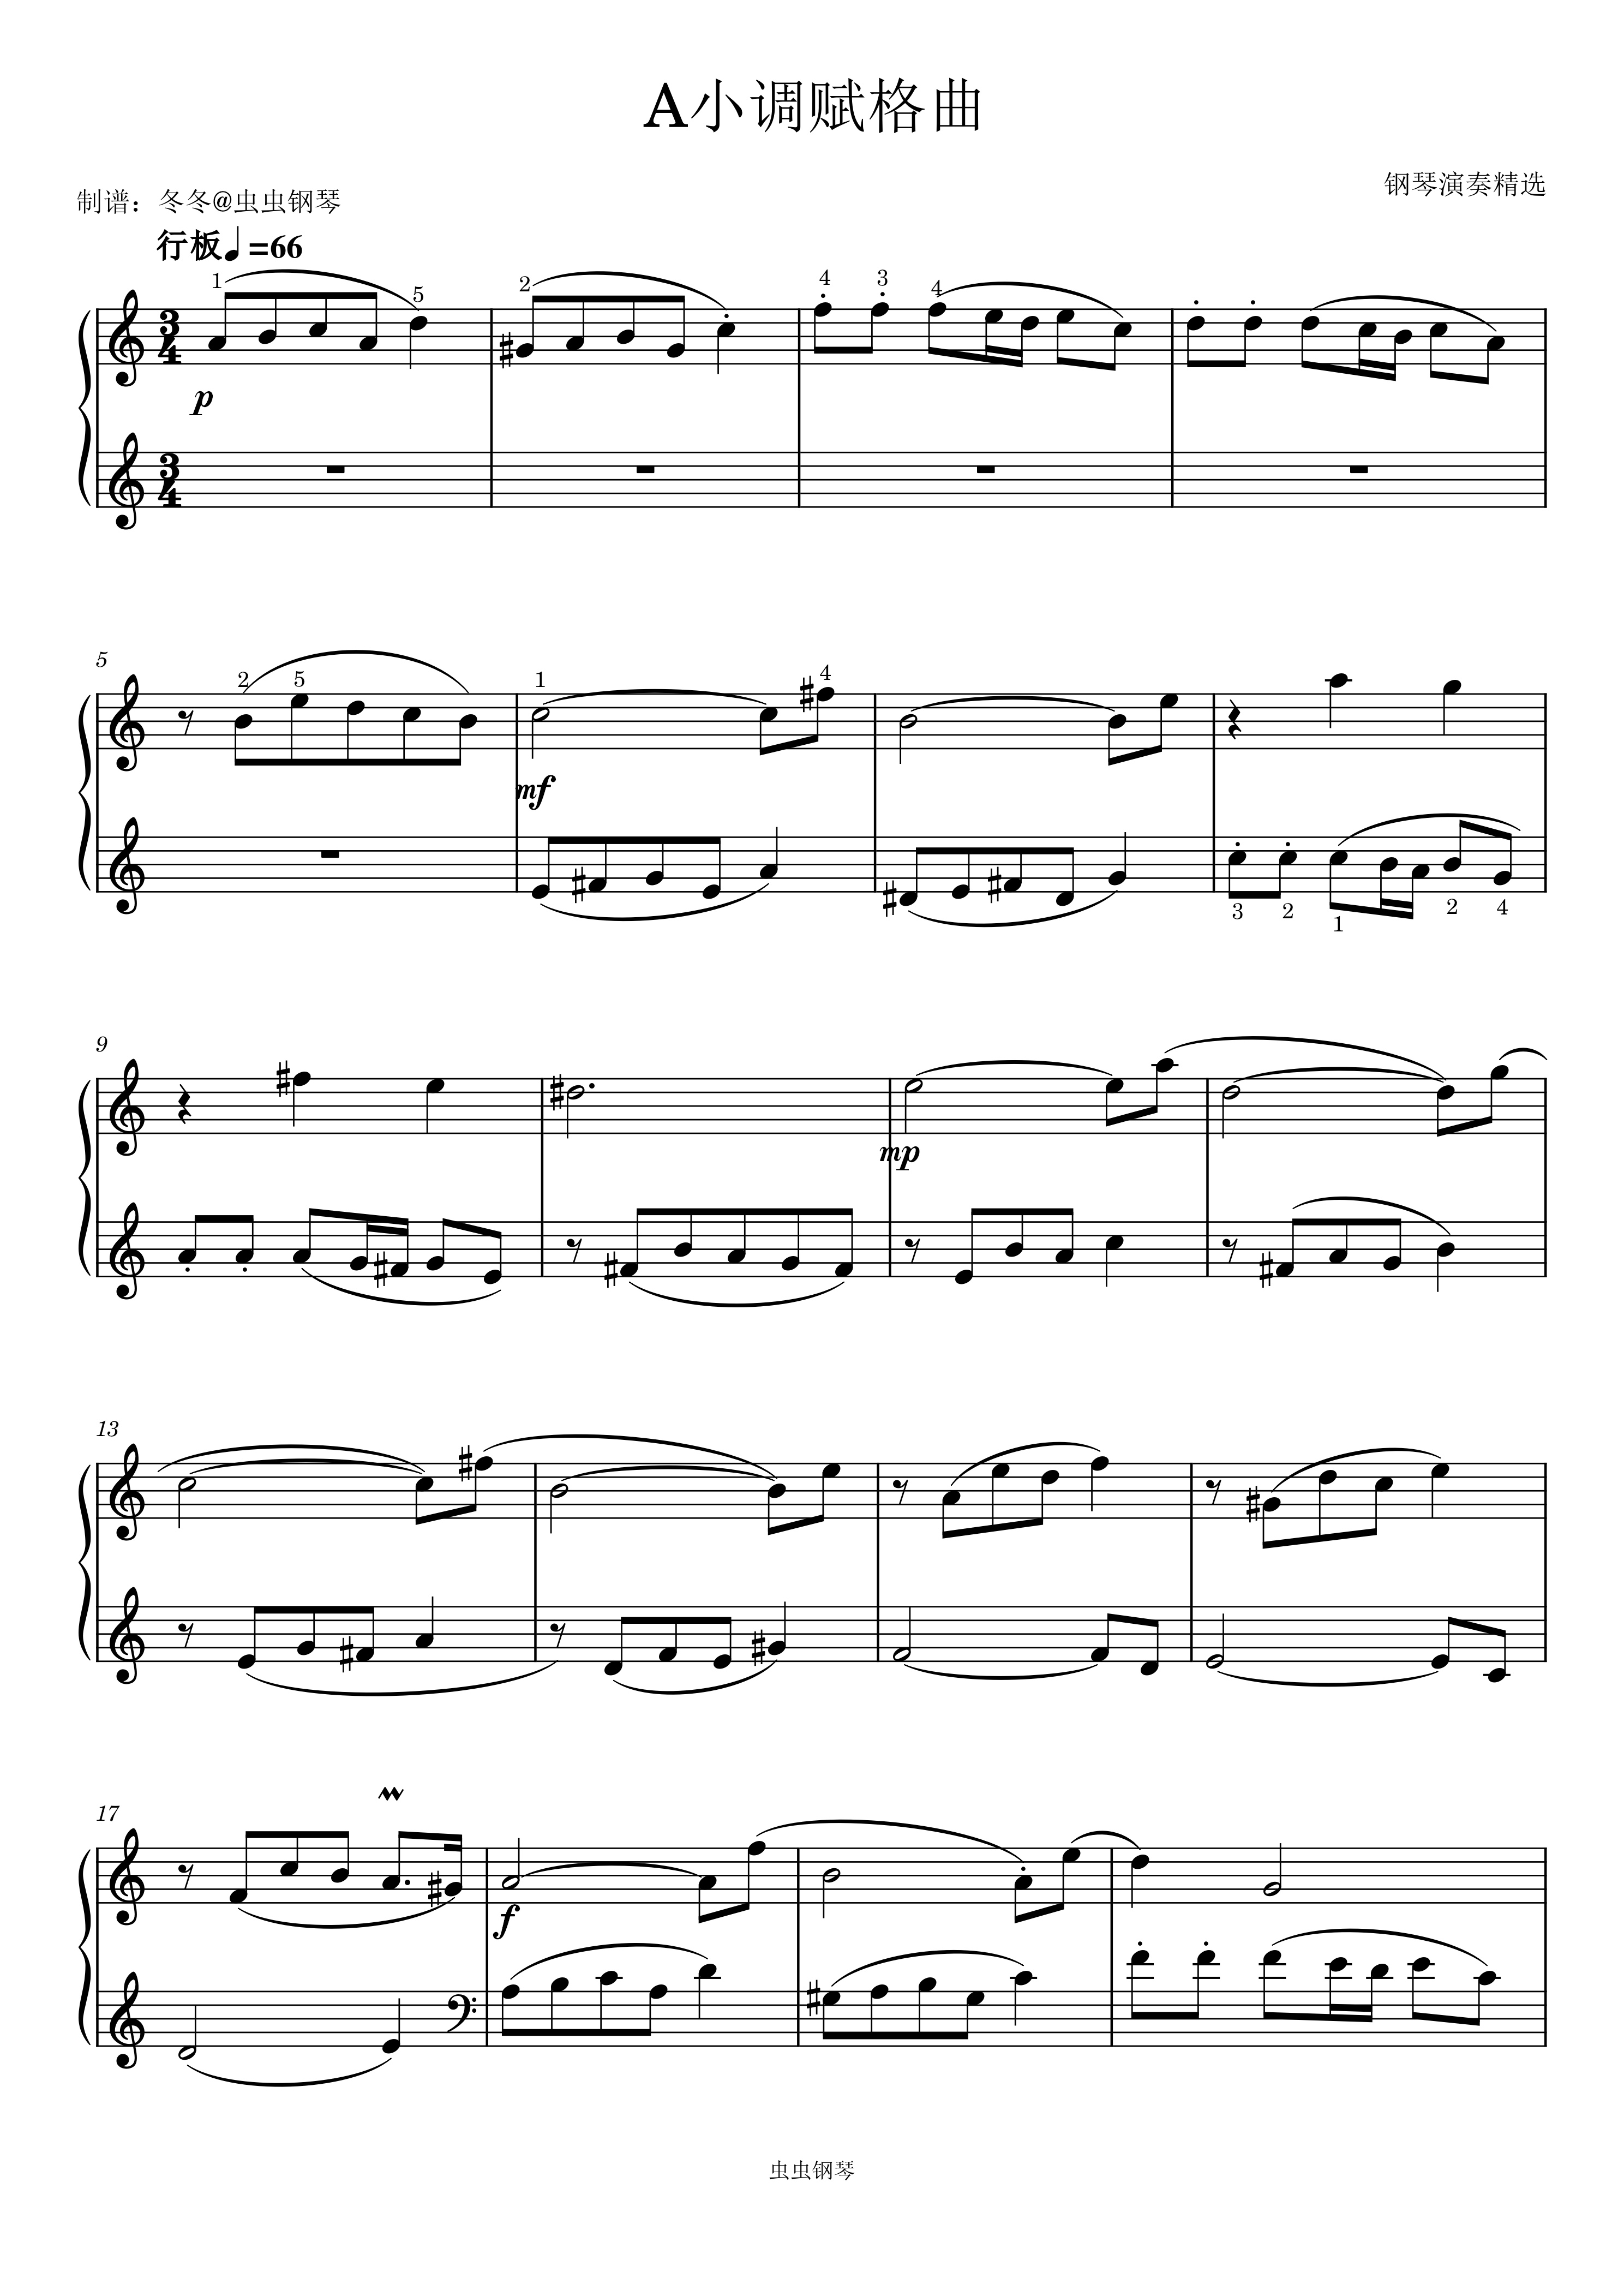 d小调托卡塔与赋格钢琴谱（BWV 565·柯尔托改编钢琴独奏版）_器乐乐谱_中国曲谱网